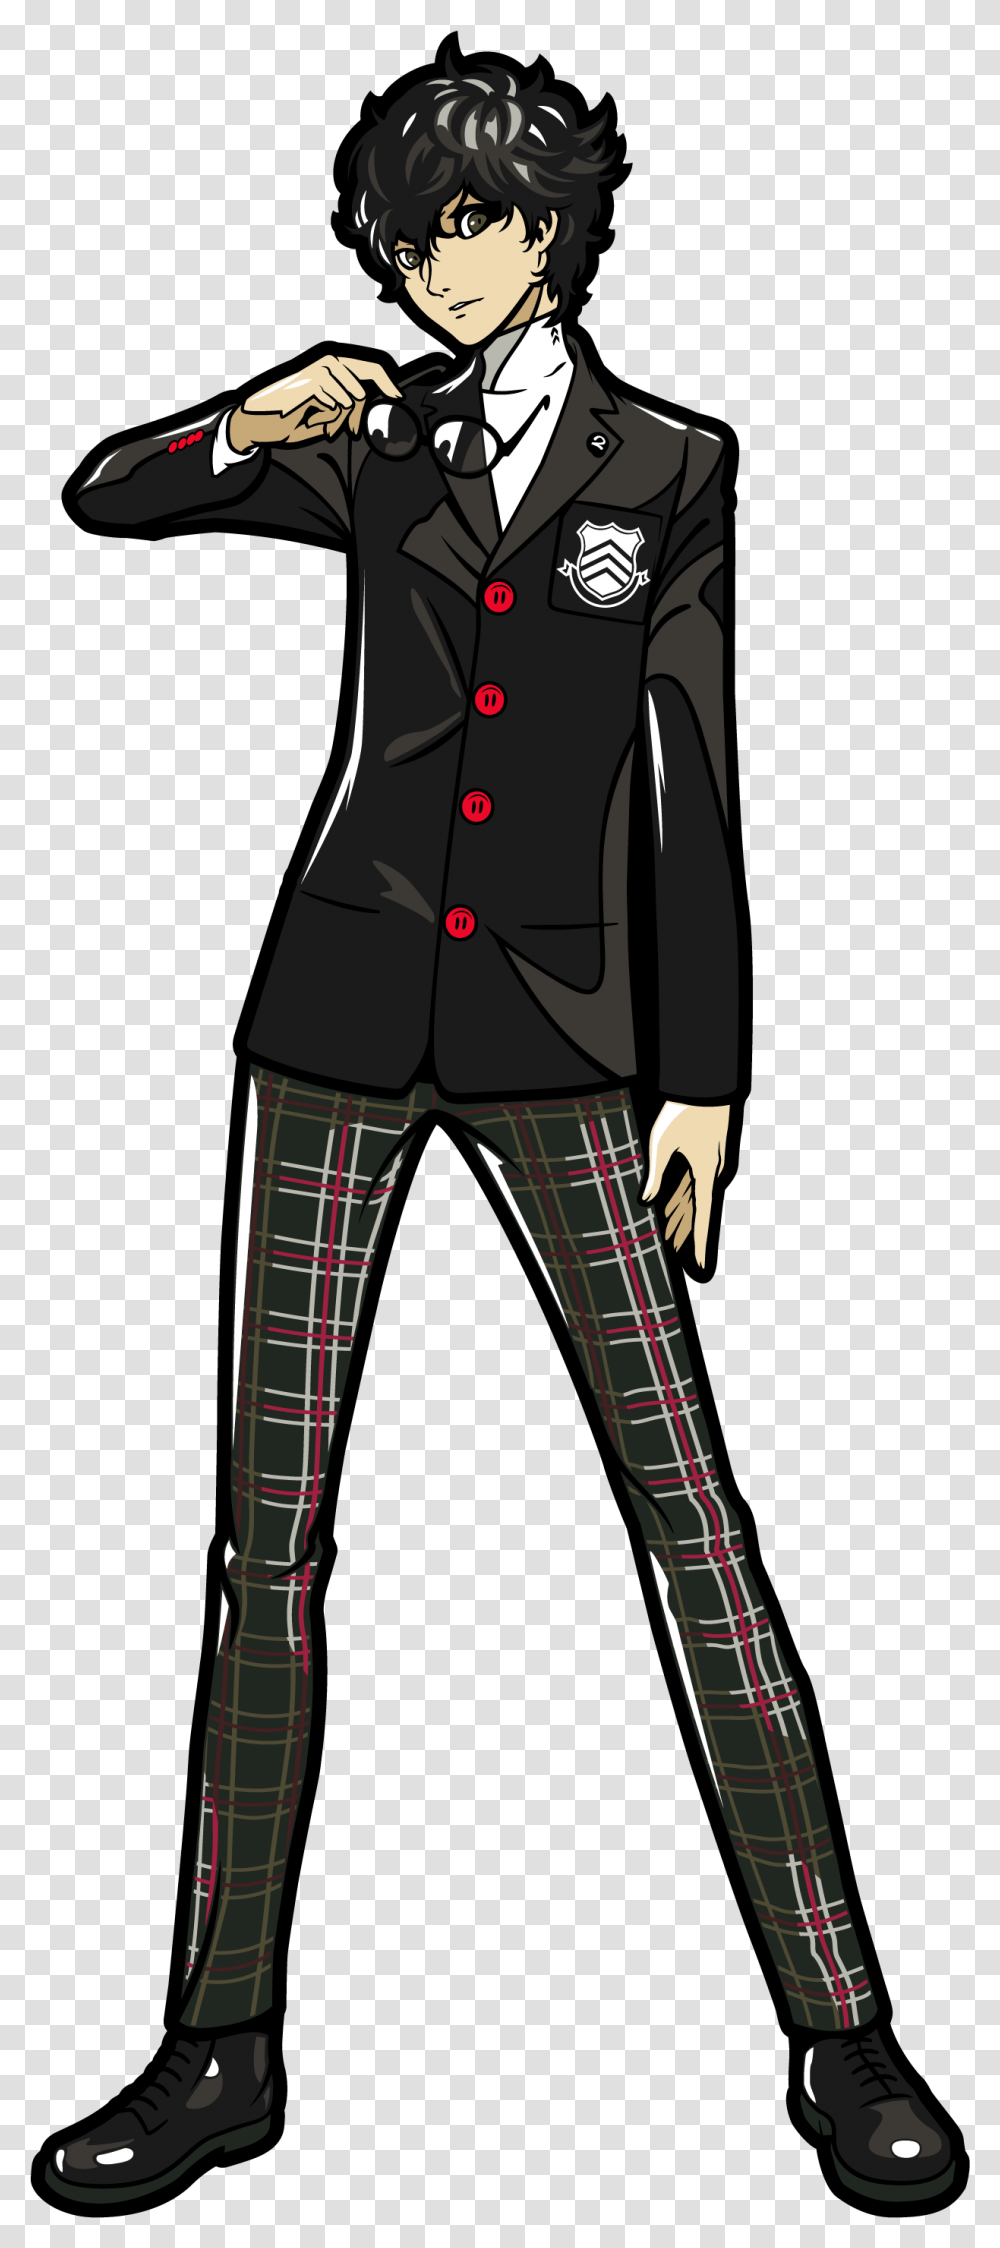 Persona 5 Concept Art Persona 5 Protagonist, Clothing, Apparel, Human, Coat Transparent Png